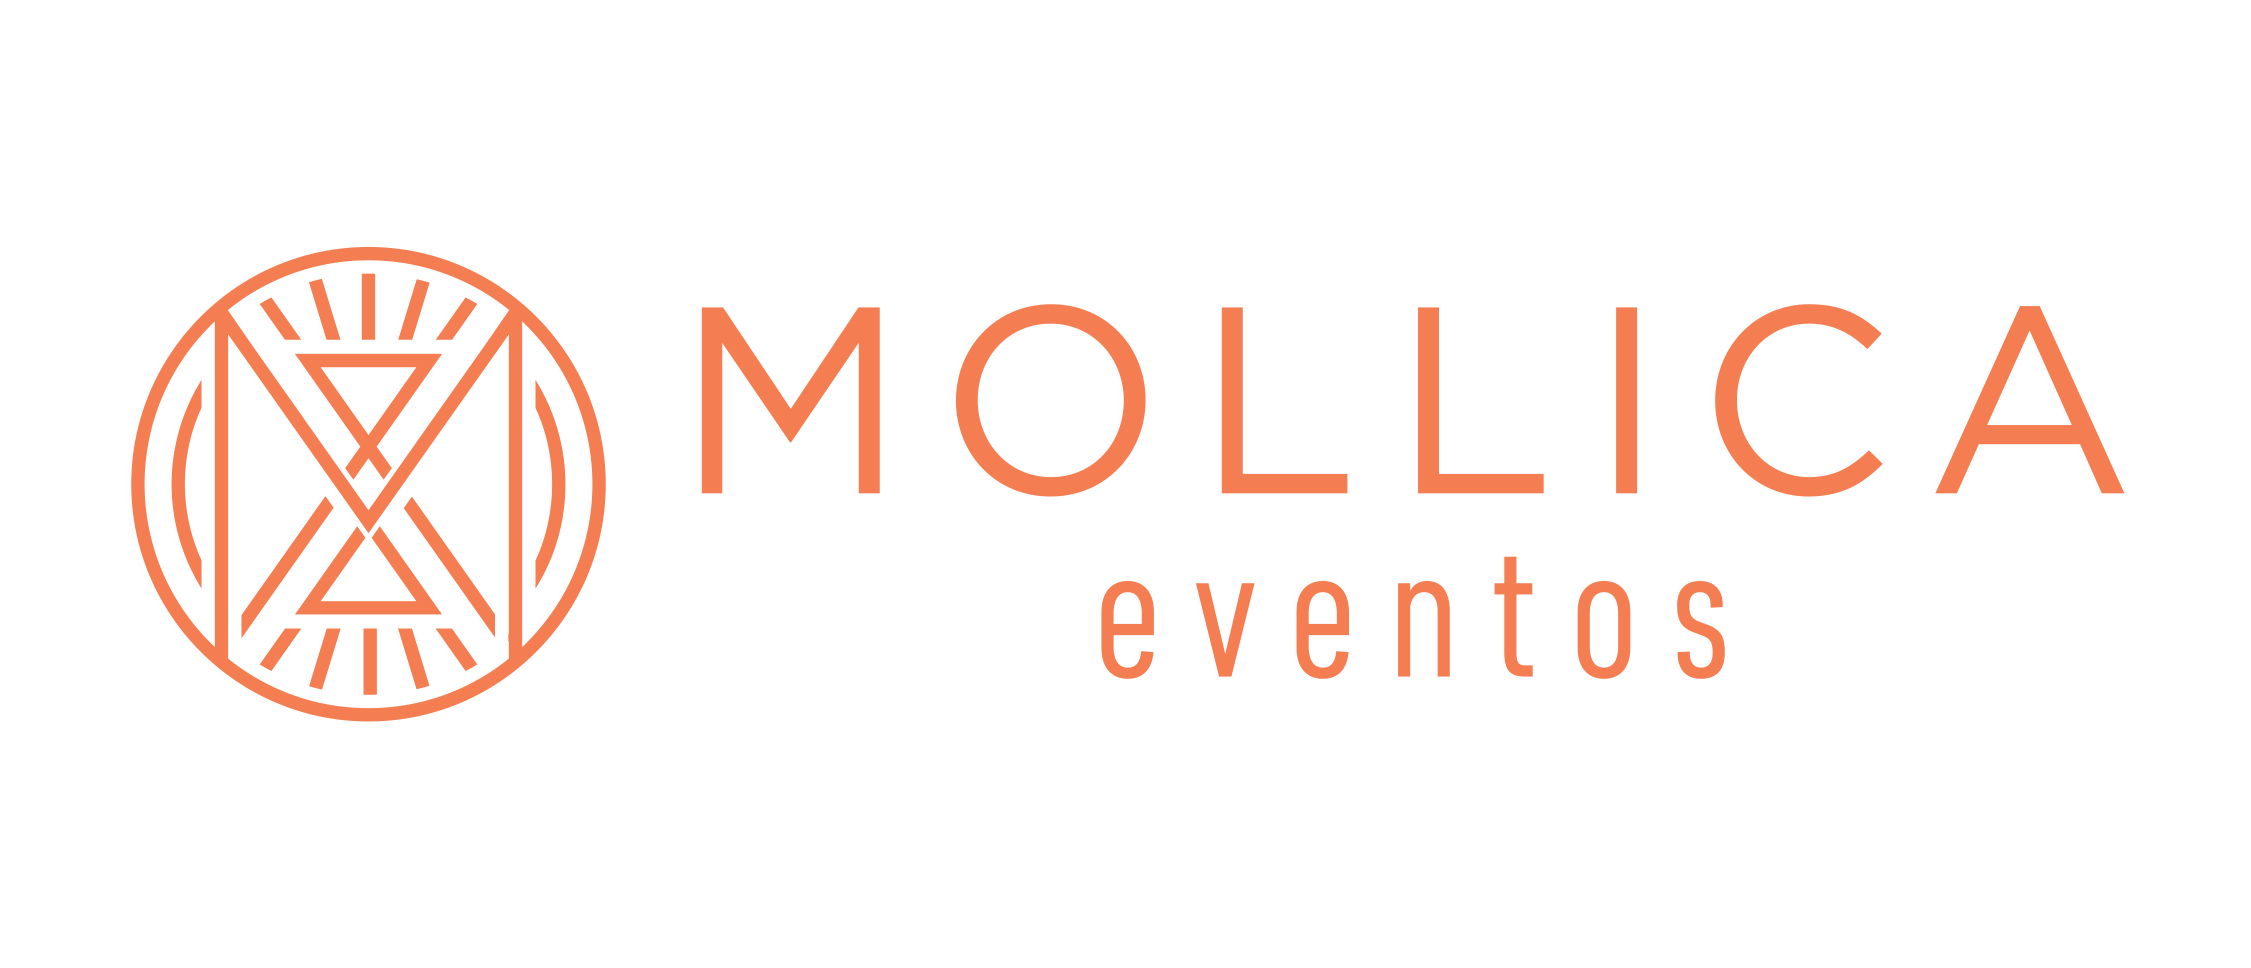 MOLLICA EVENTIOS